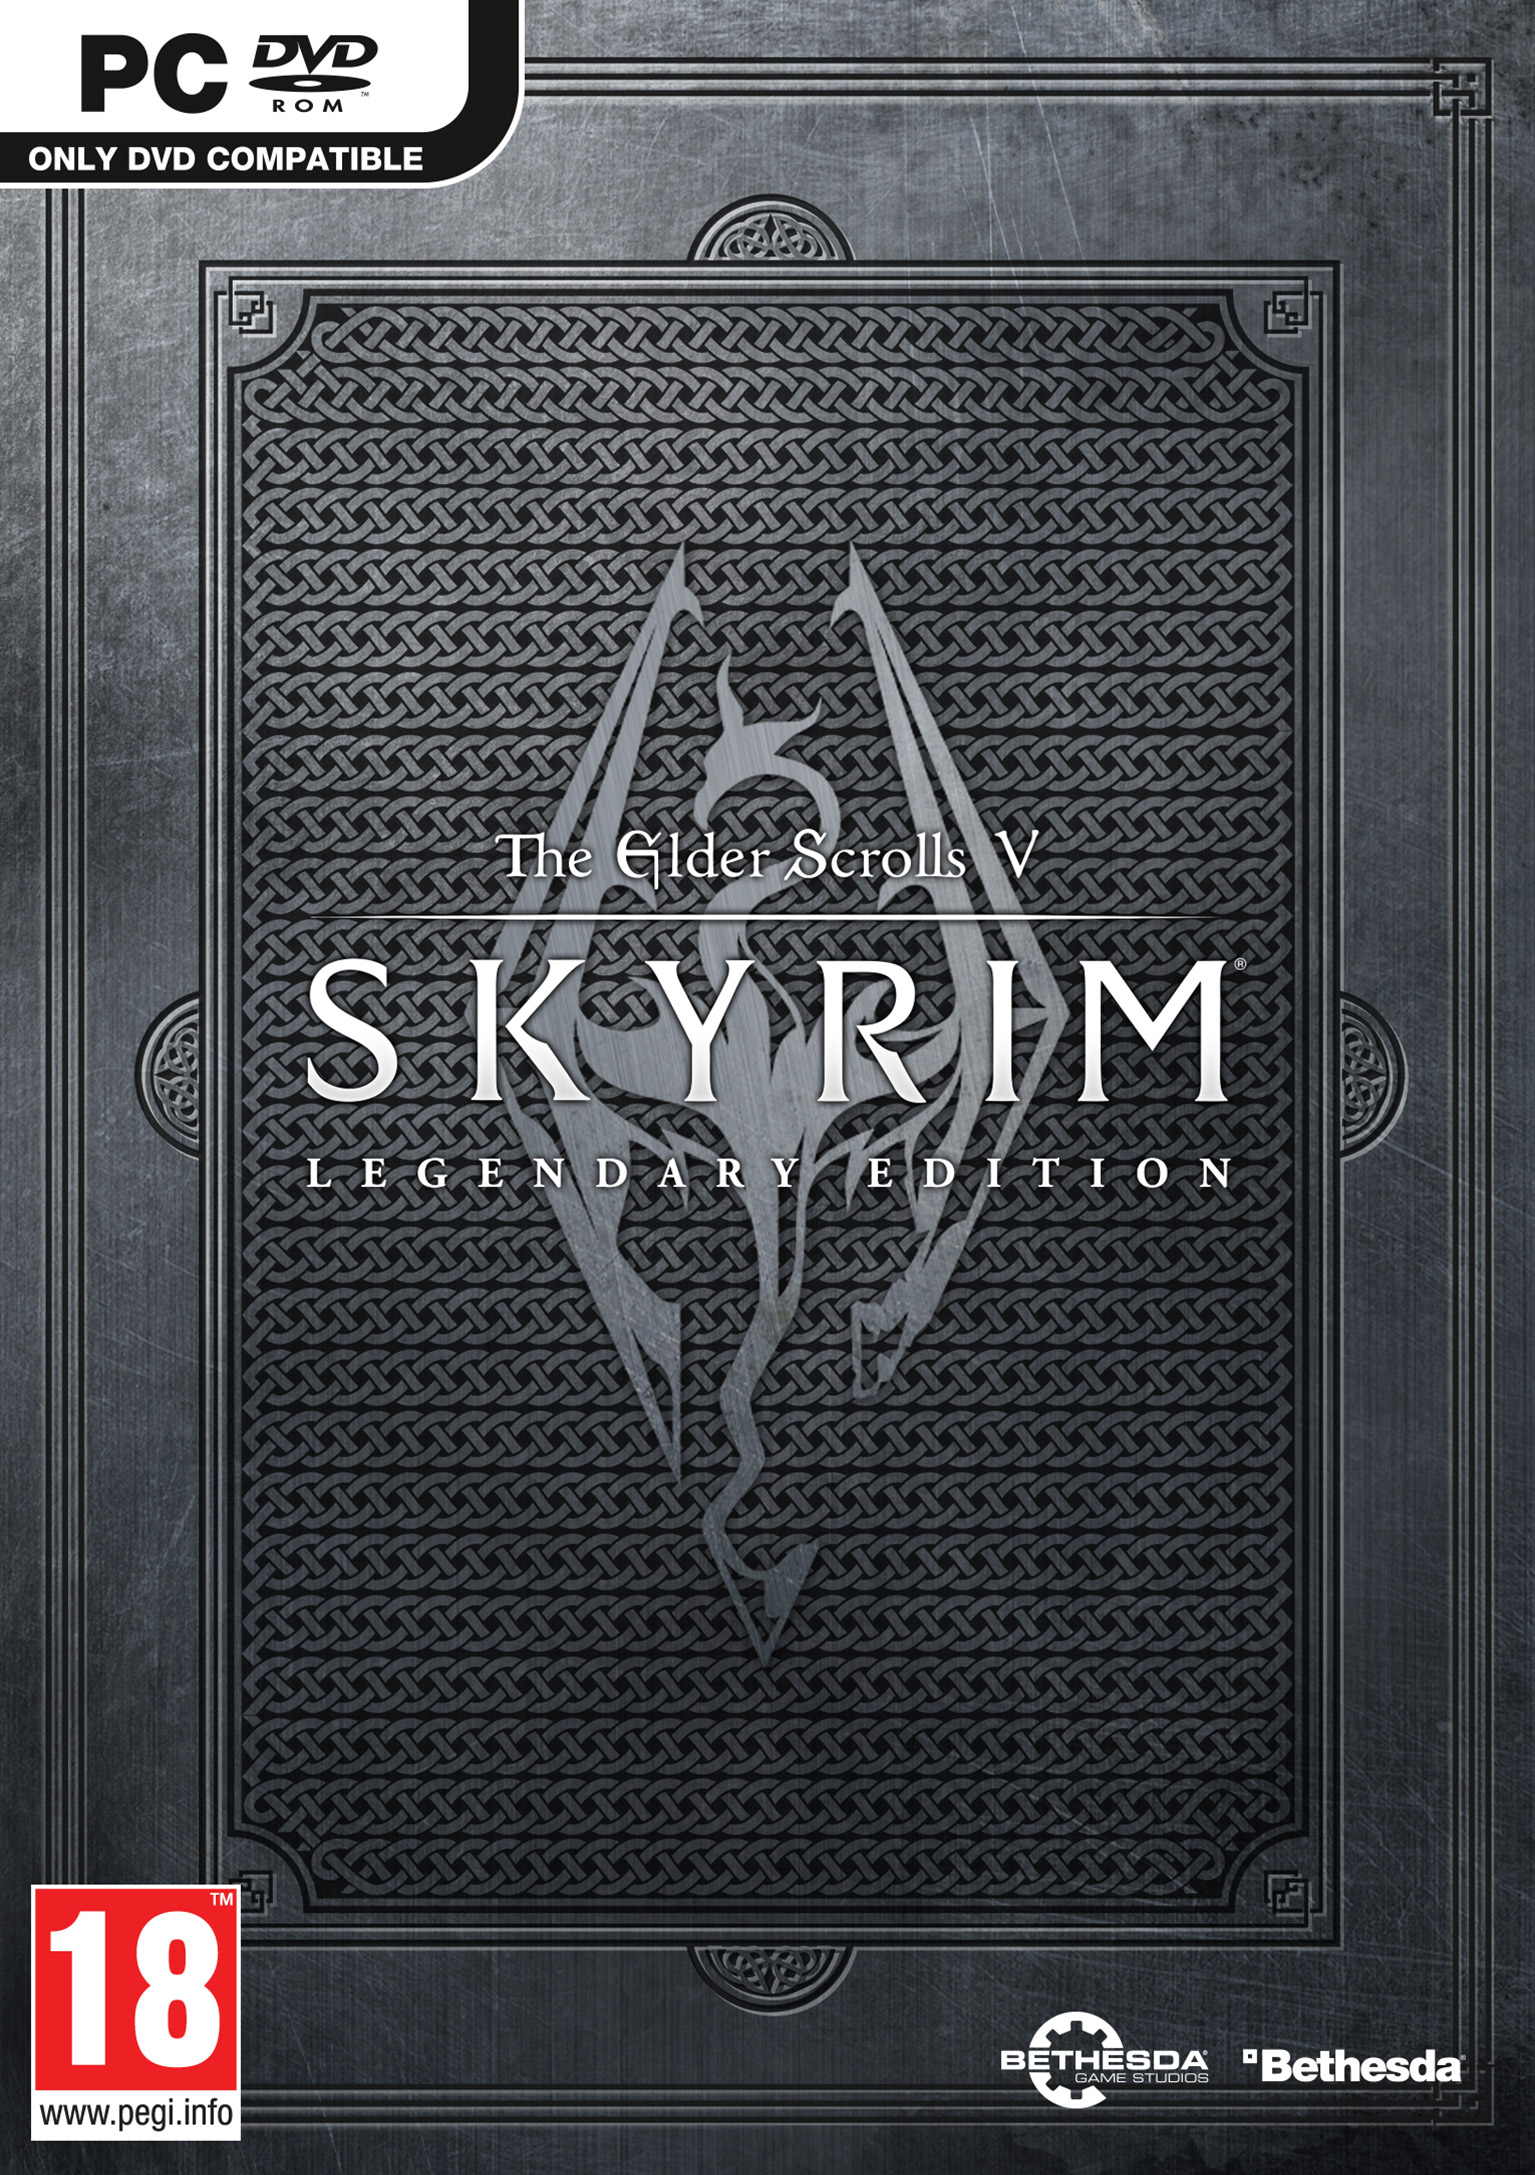 The Elder Scrolls V: Skyrim - Legendary Edition - predn DVD obal